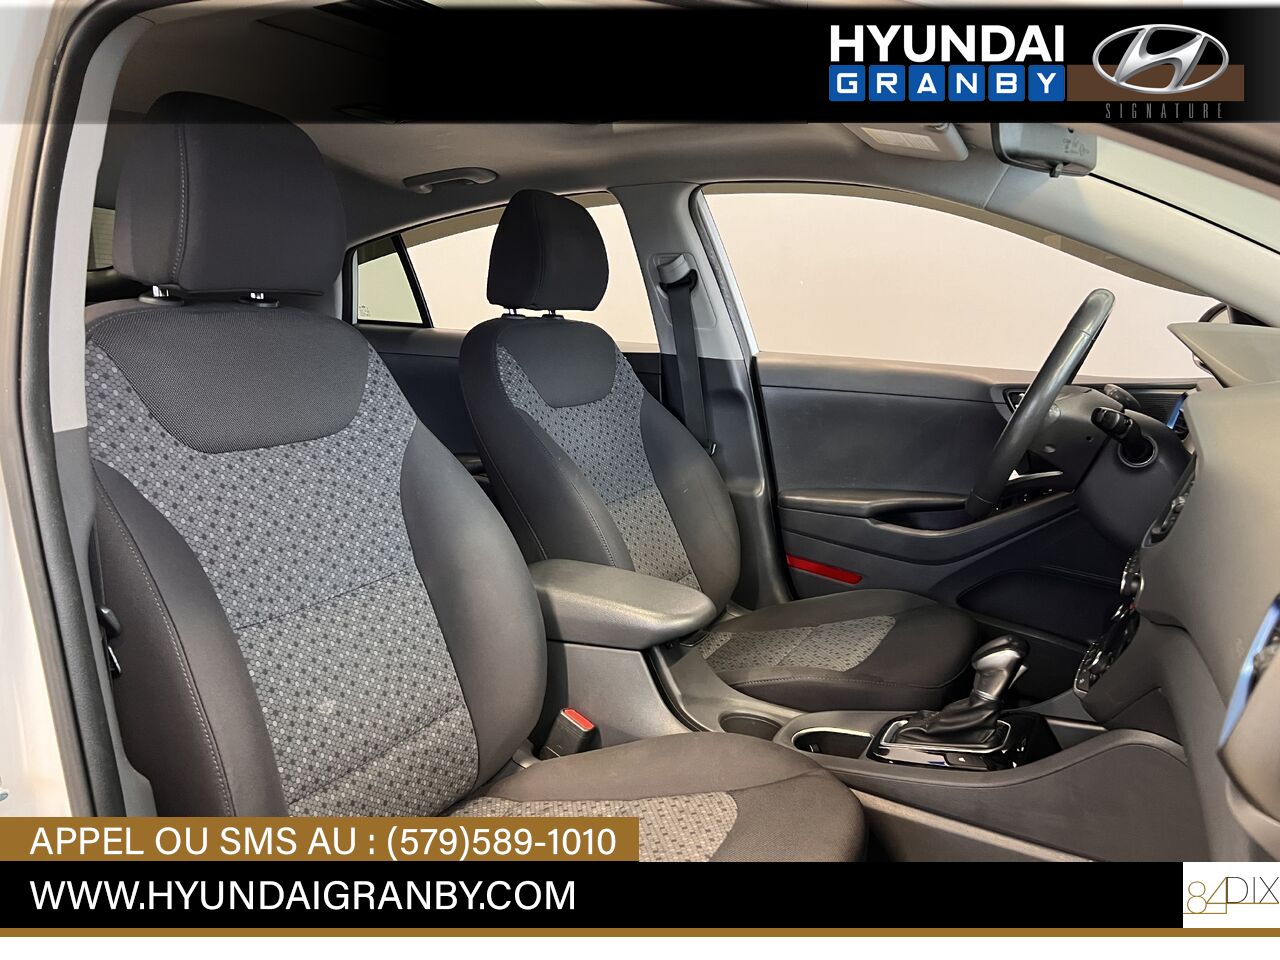 2017 Hyundai Ioniq hybride Granby - photo #27